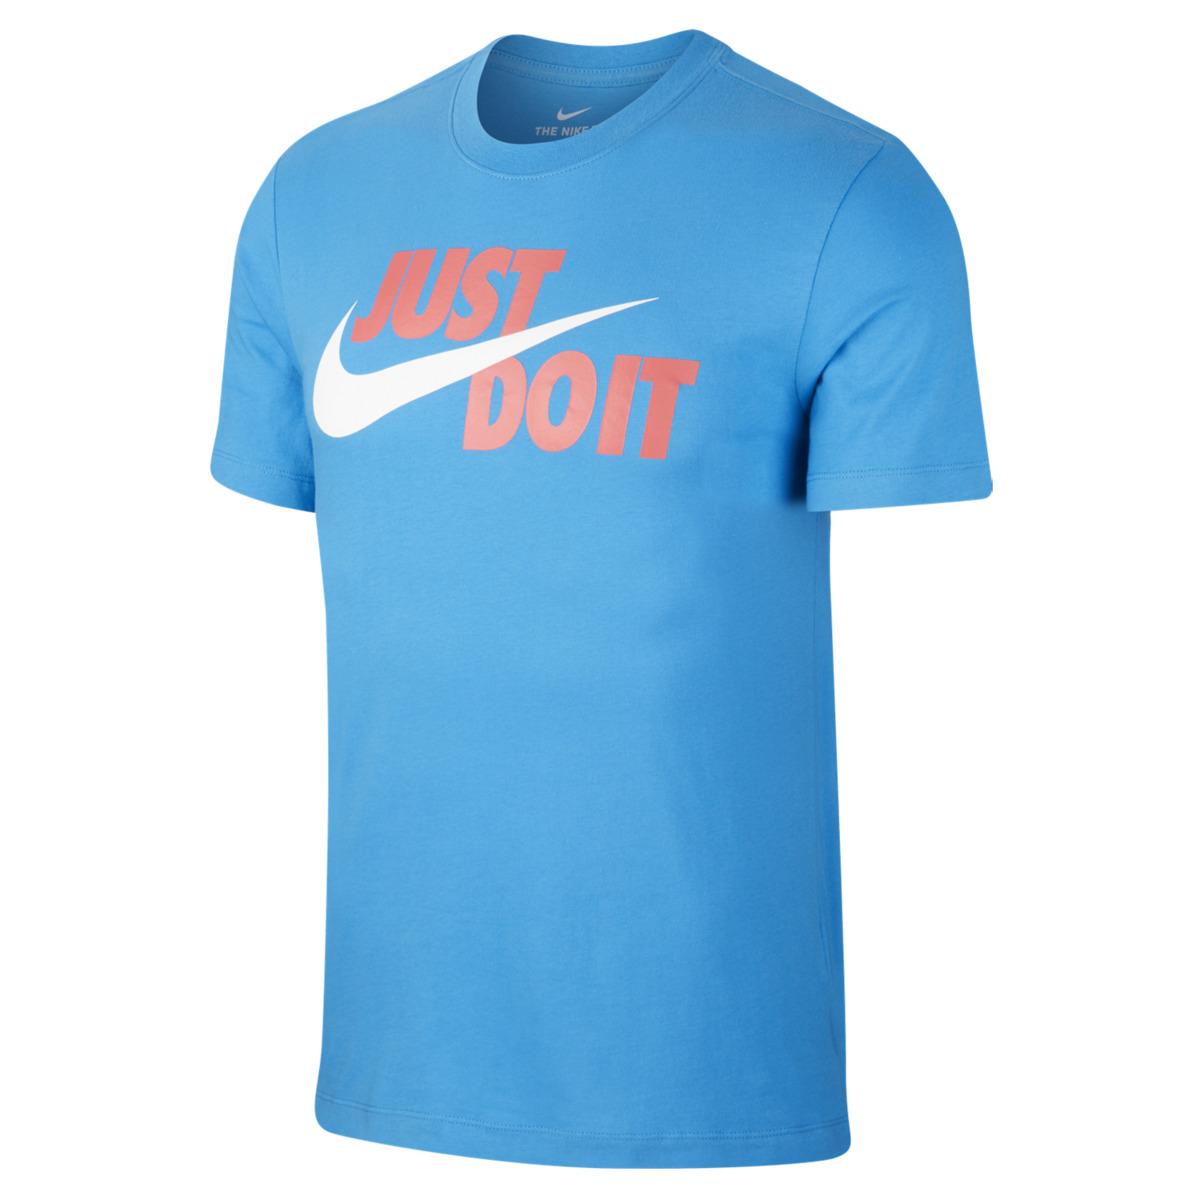 Nike Cotton Sportswear T-shirt in Light Blue (Blue) for Men - Lyst